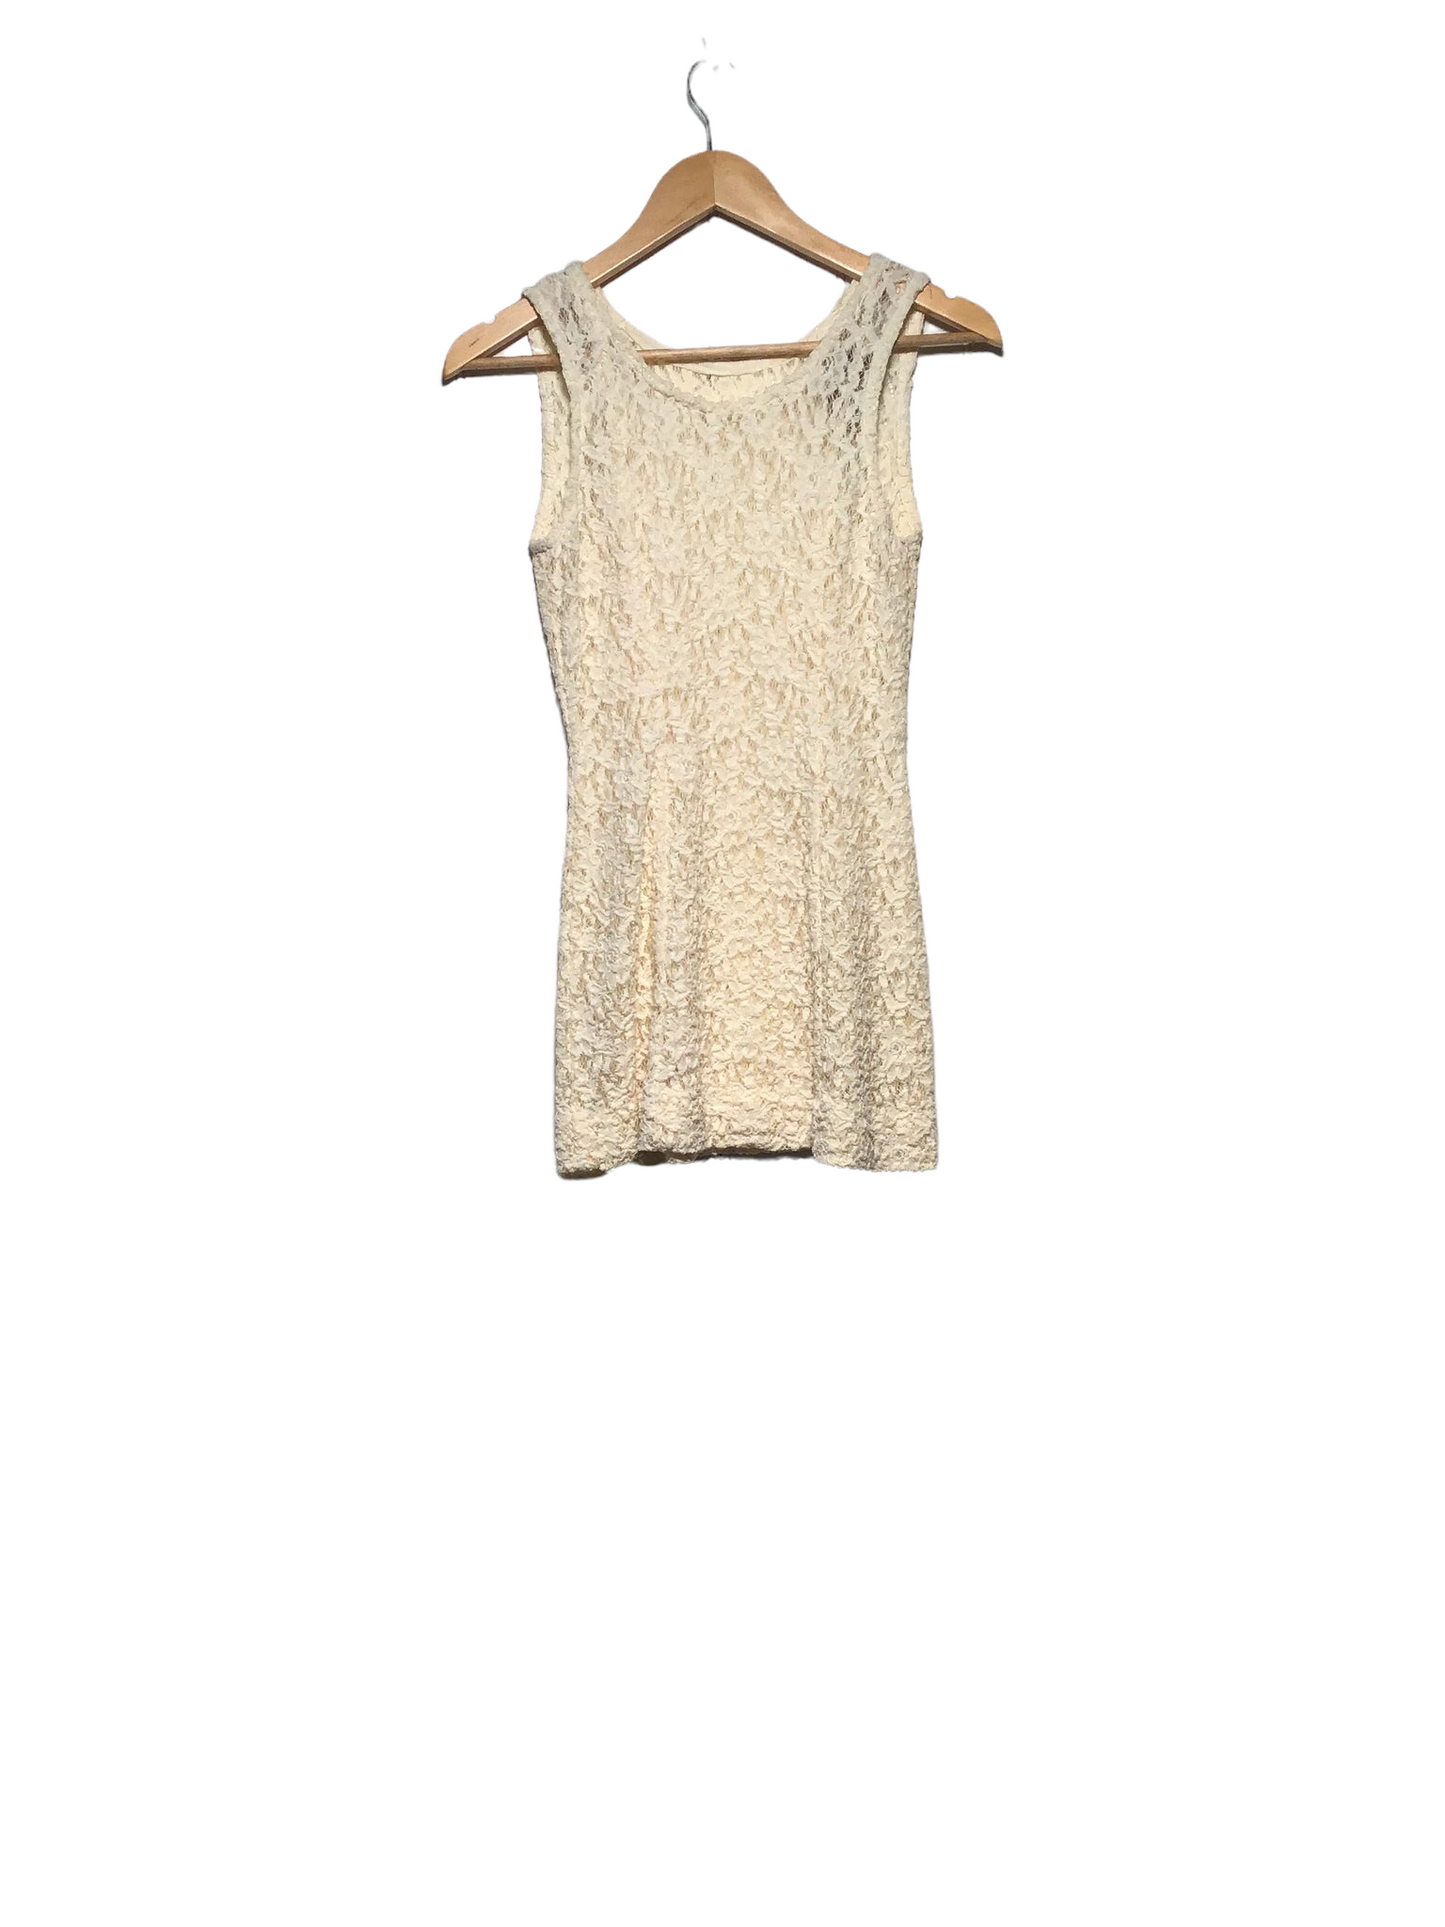 Lace Summer Mini Dress (Size XS)